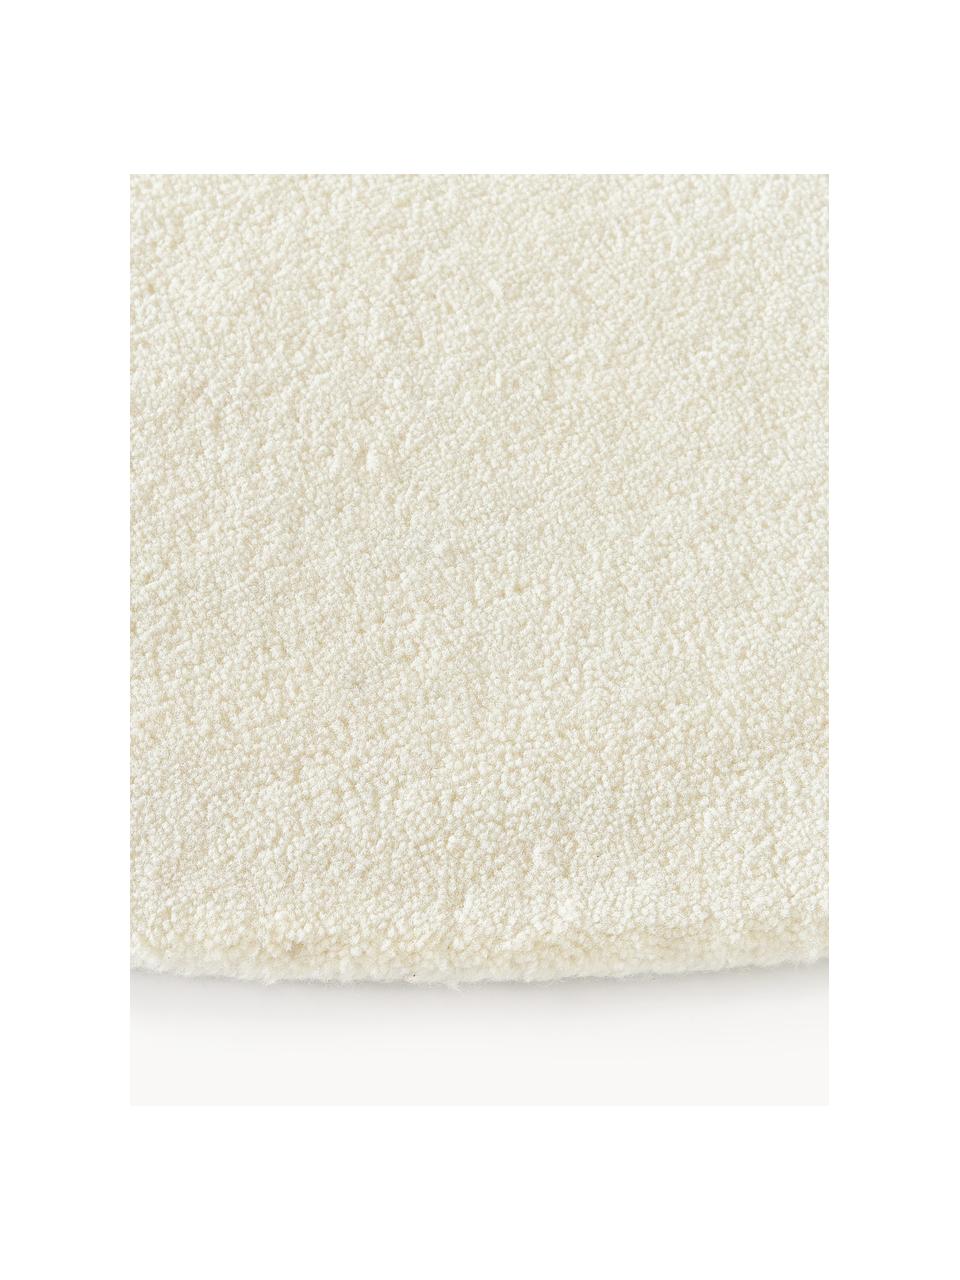 Tappeto rotondo in lana a pelo corto fatto a mano Jadie, Retro: 70% cotone, 30% poliester, Bianco crema, Ø 150 cm (taglia M)